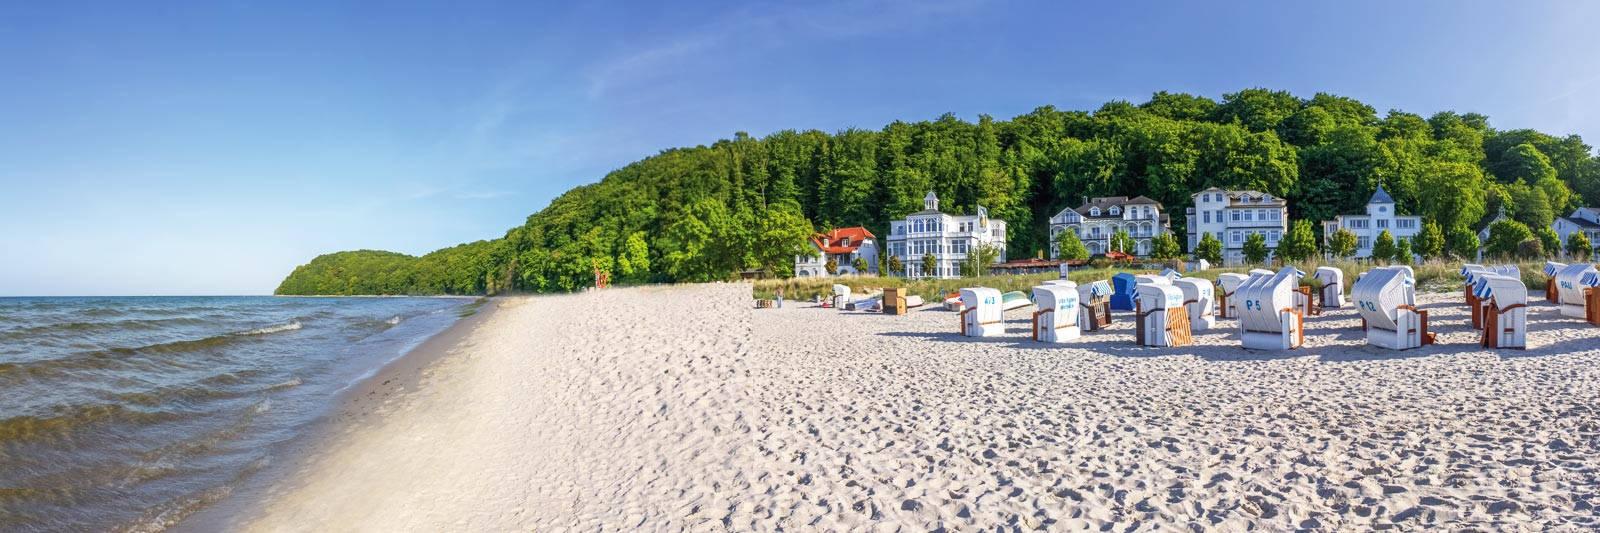 26 Ferienwohnungen und Ferienhäuser in Gadebusch - tourist-online.de